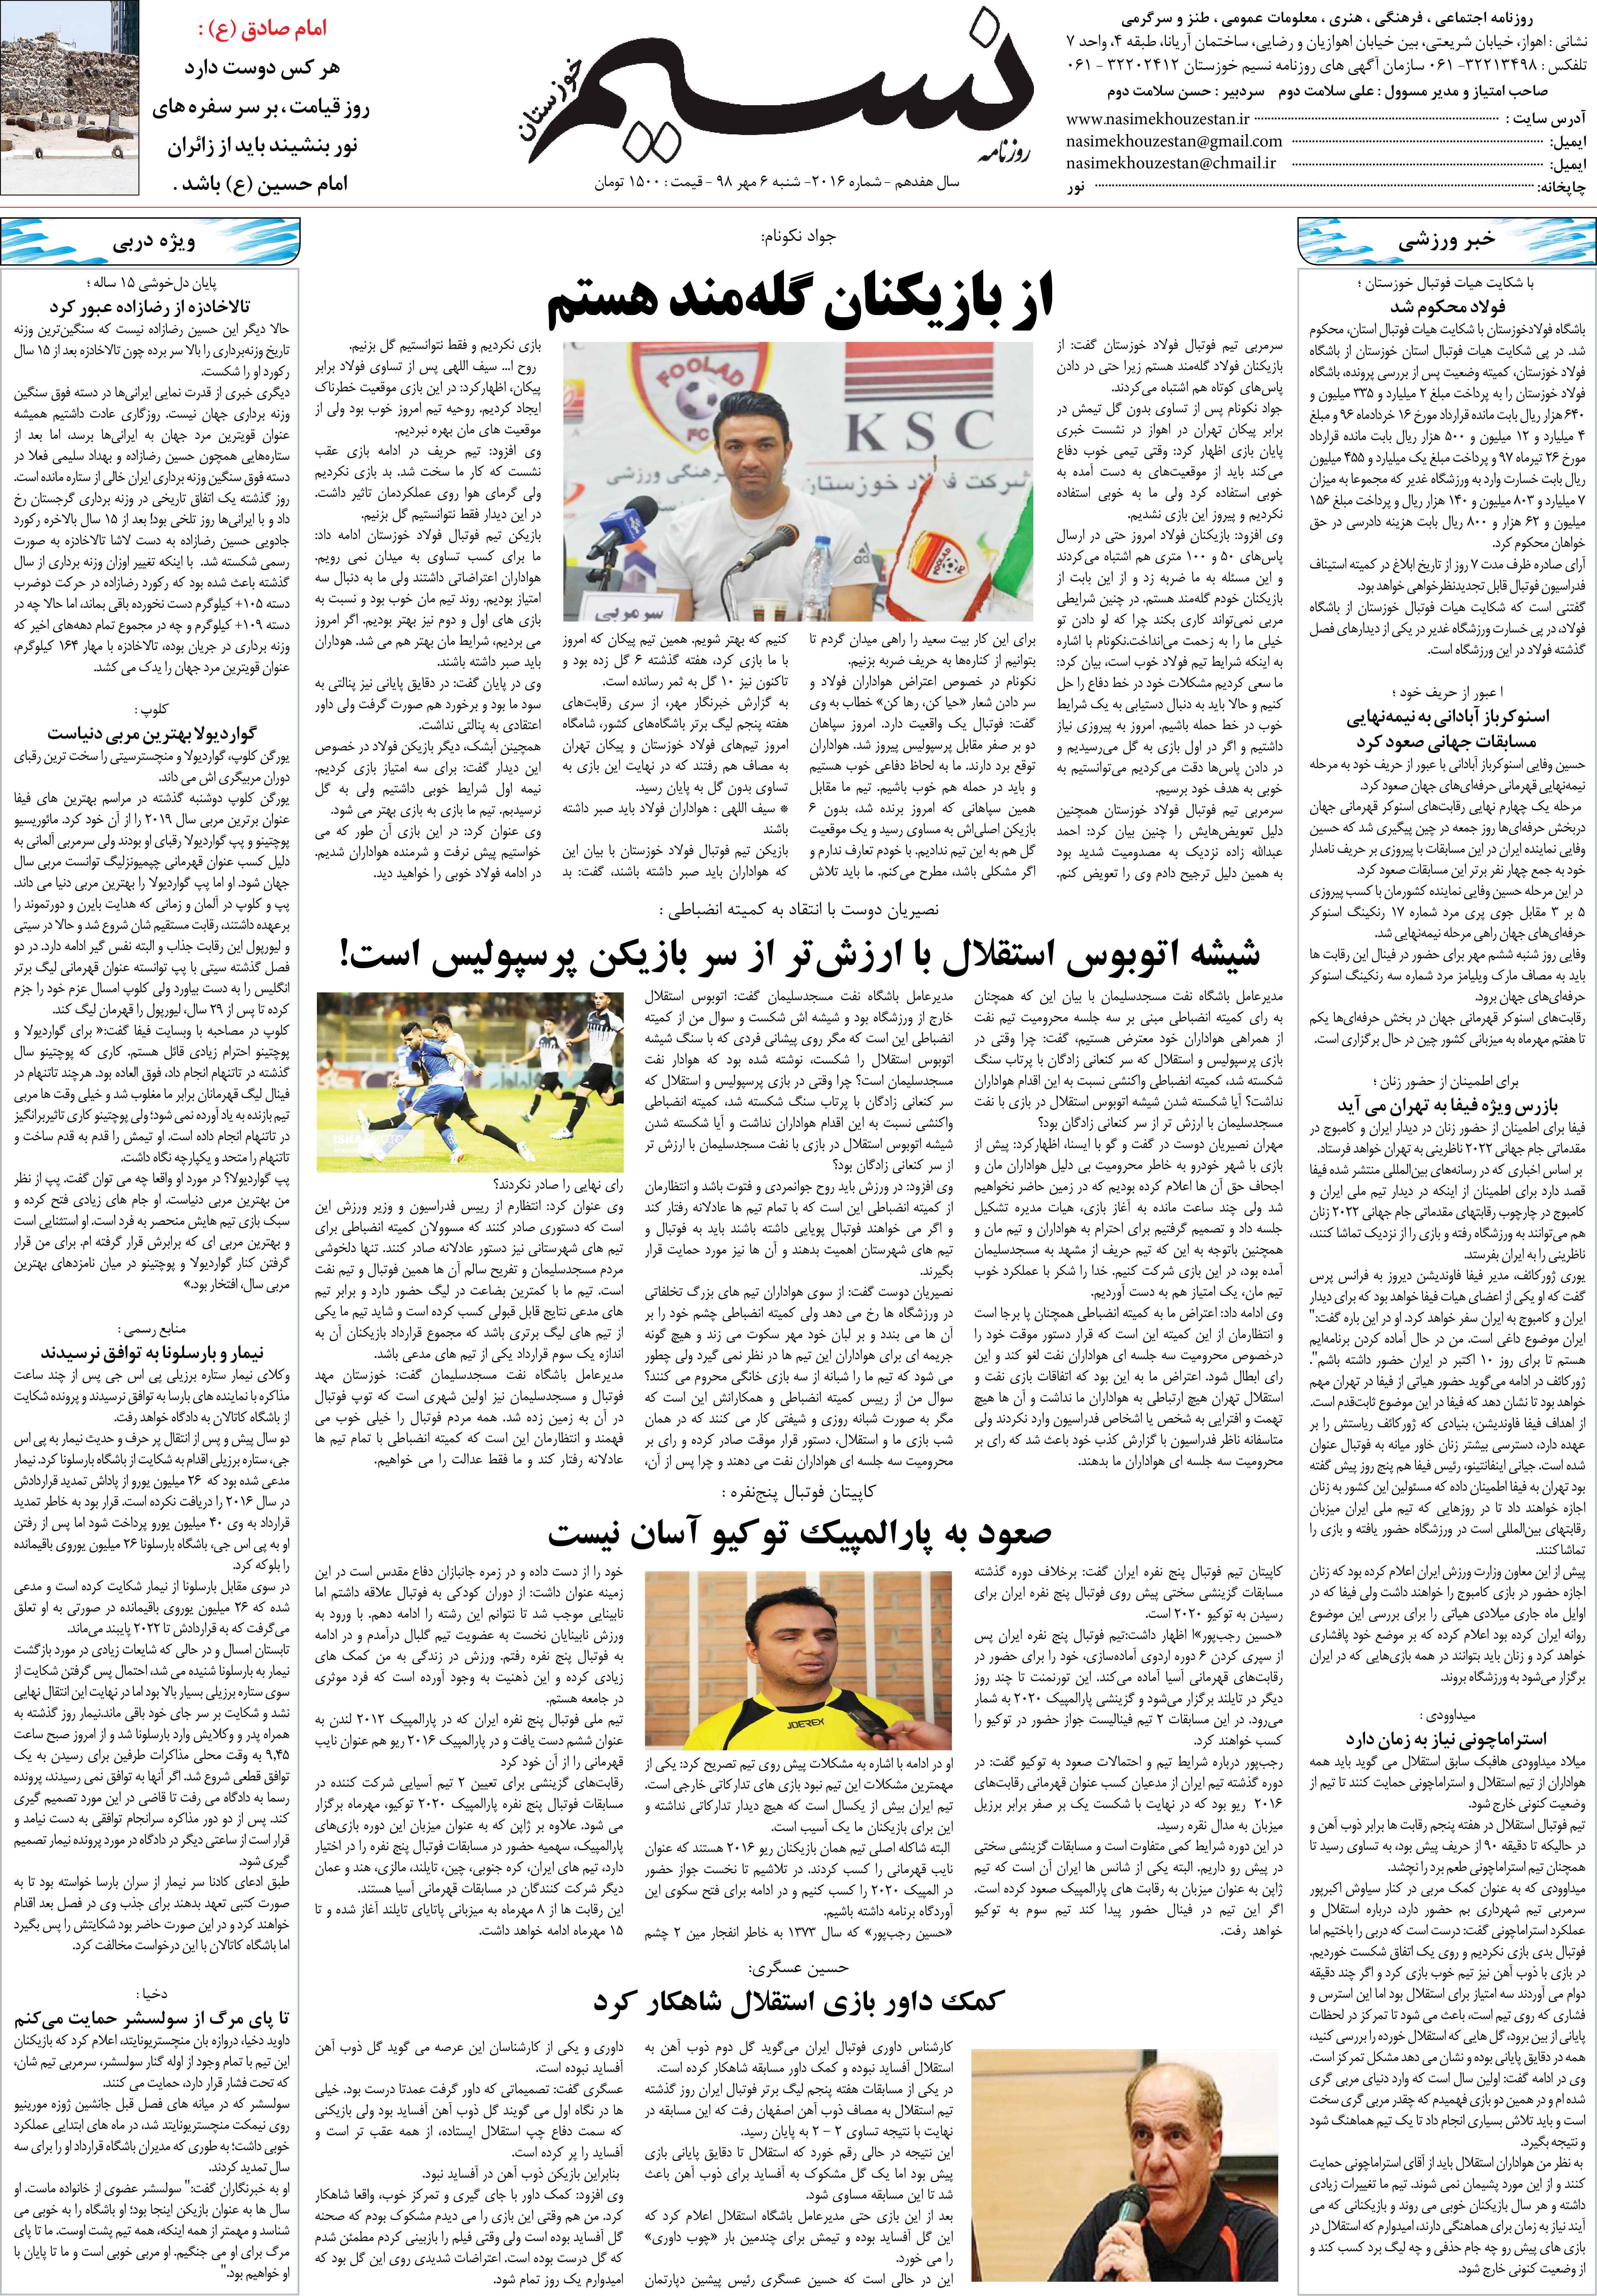 صفحه آخر روزنامه نسیم شماره 2016